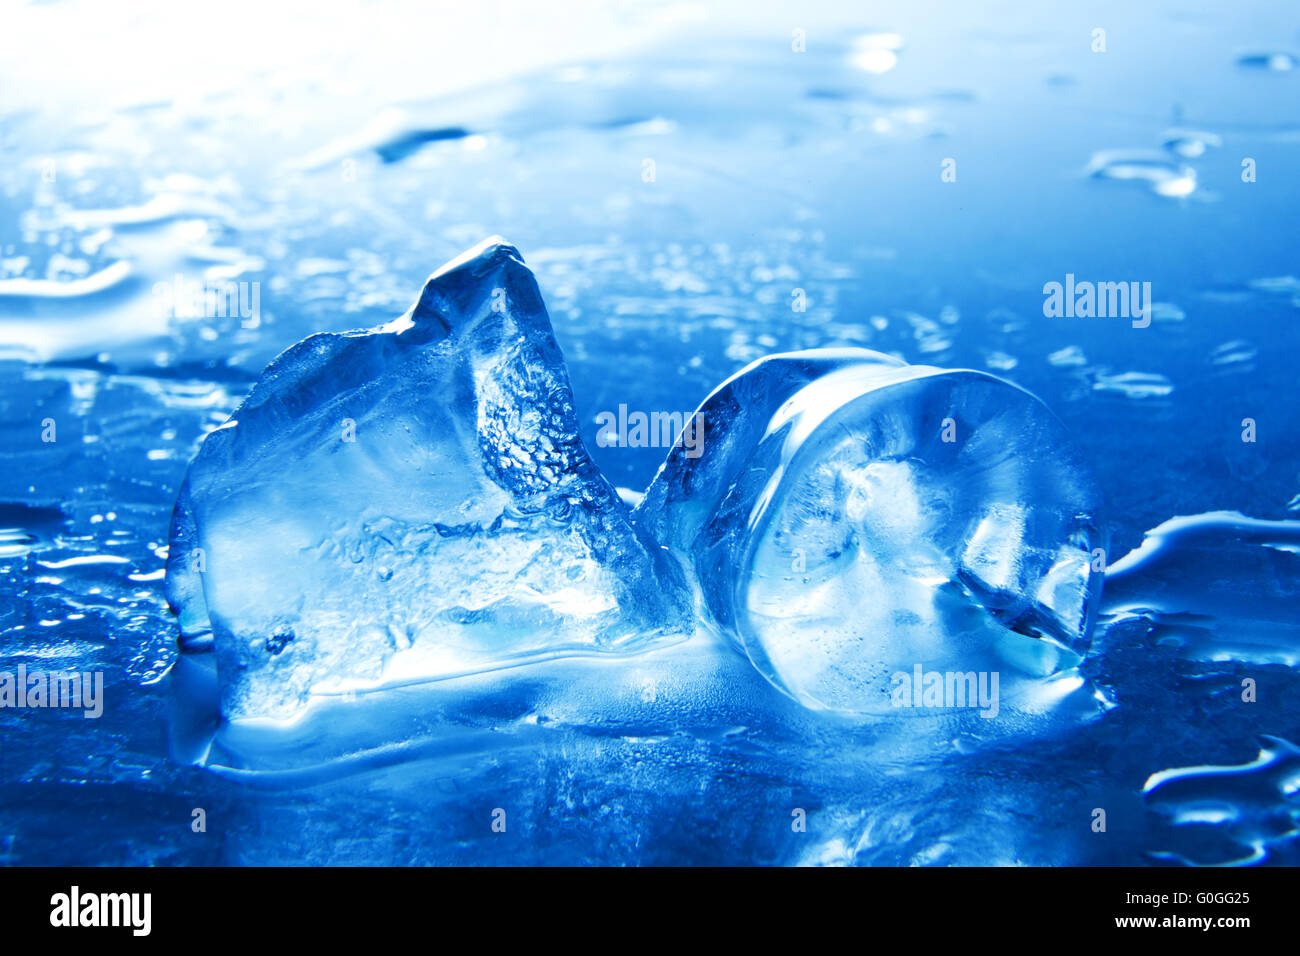 Cerca del punto de fusión de los cubitos de hielo. Un refresco. Tinte azul. Foto de stock